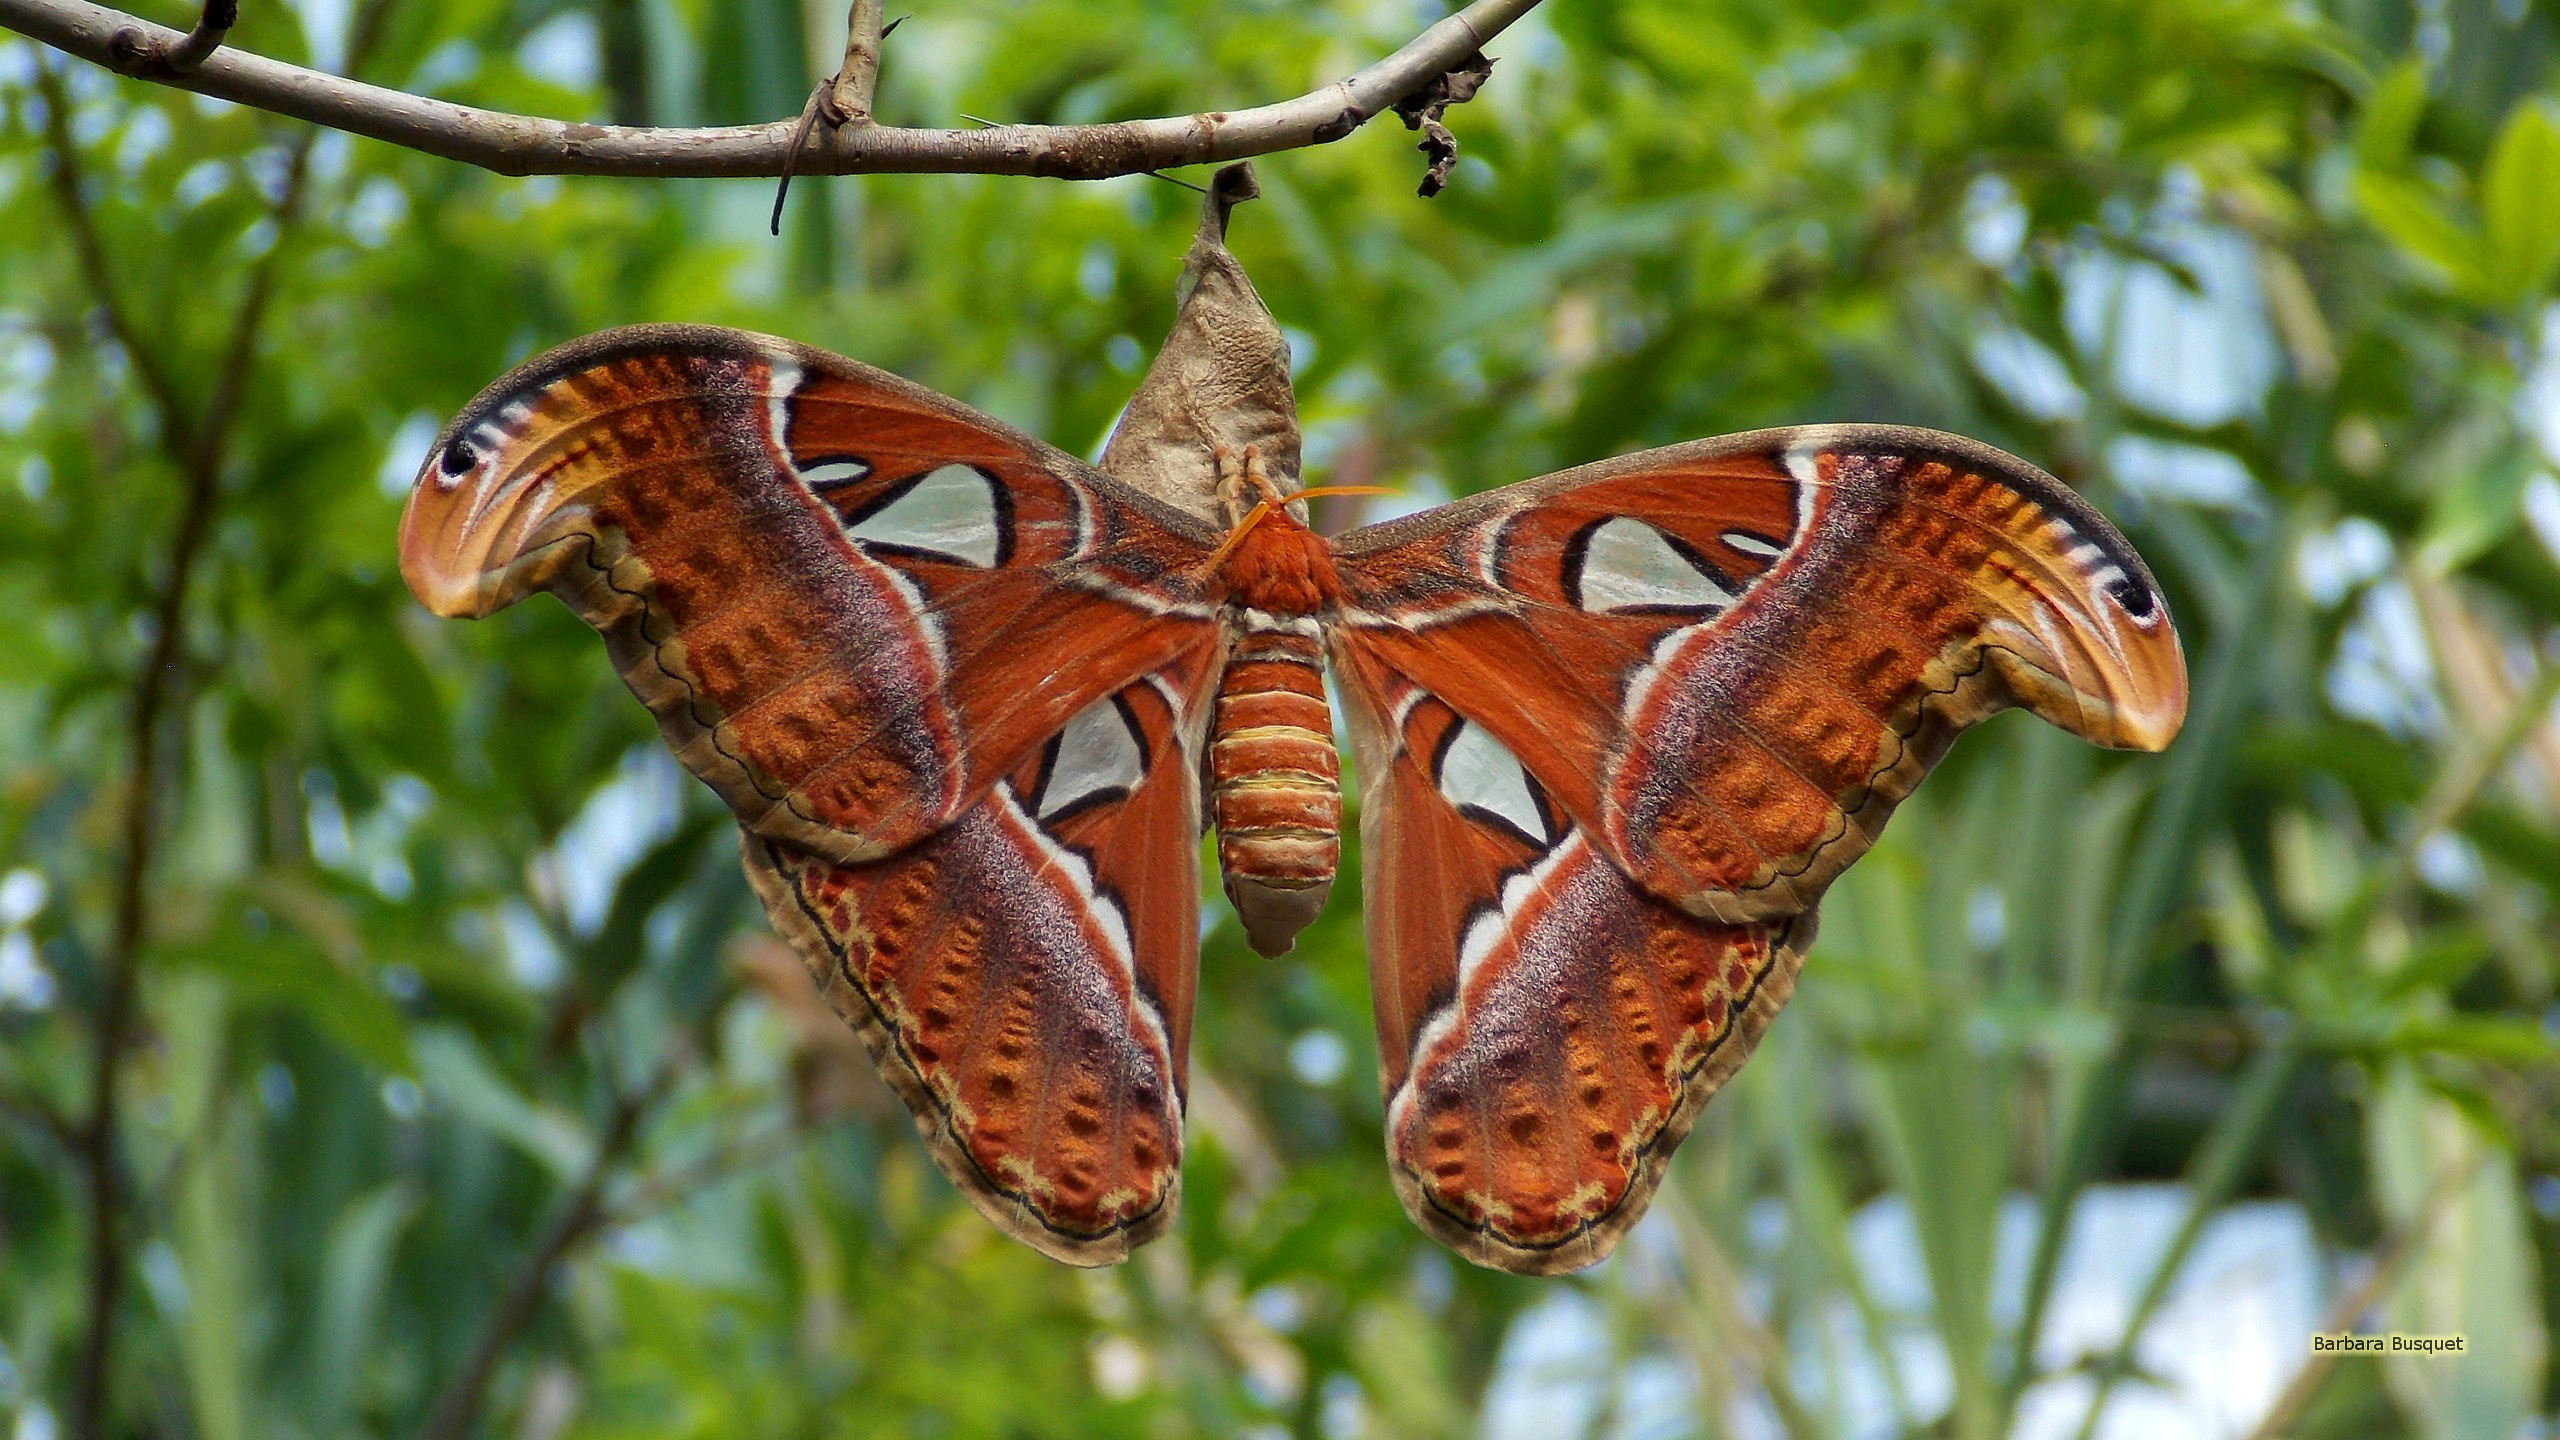 Exquisite atlas moth, Majestic wingspan, Vibrant colors, Close-up details, 2560x1440 HD Desktop